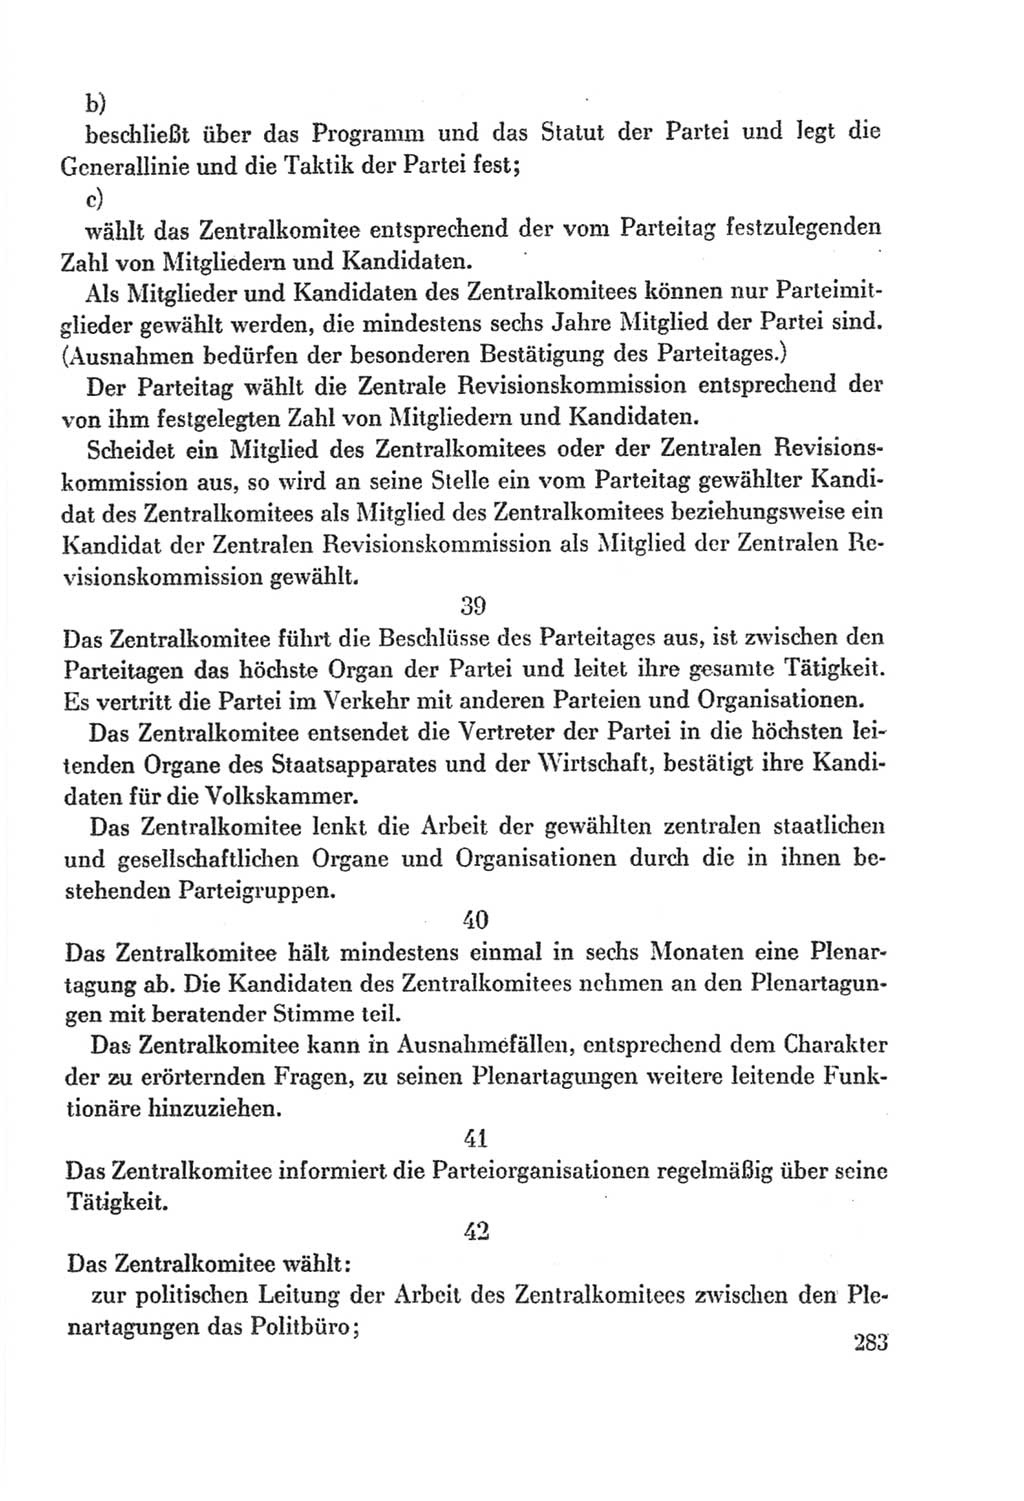 Protokoll der Verhandlungen des Ⅸ. Parteitages der Sozialistischen Einheitspartei Deutschlands (SED) [Deutsche Demokratische Republik (DDR)] 1976, Band 2, Seite 283 (Prot. Verh. Ⅸ. PT SED DDR 1976, Bd. 2, S. 283)